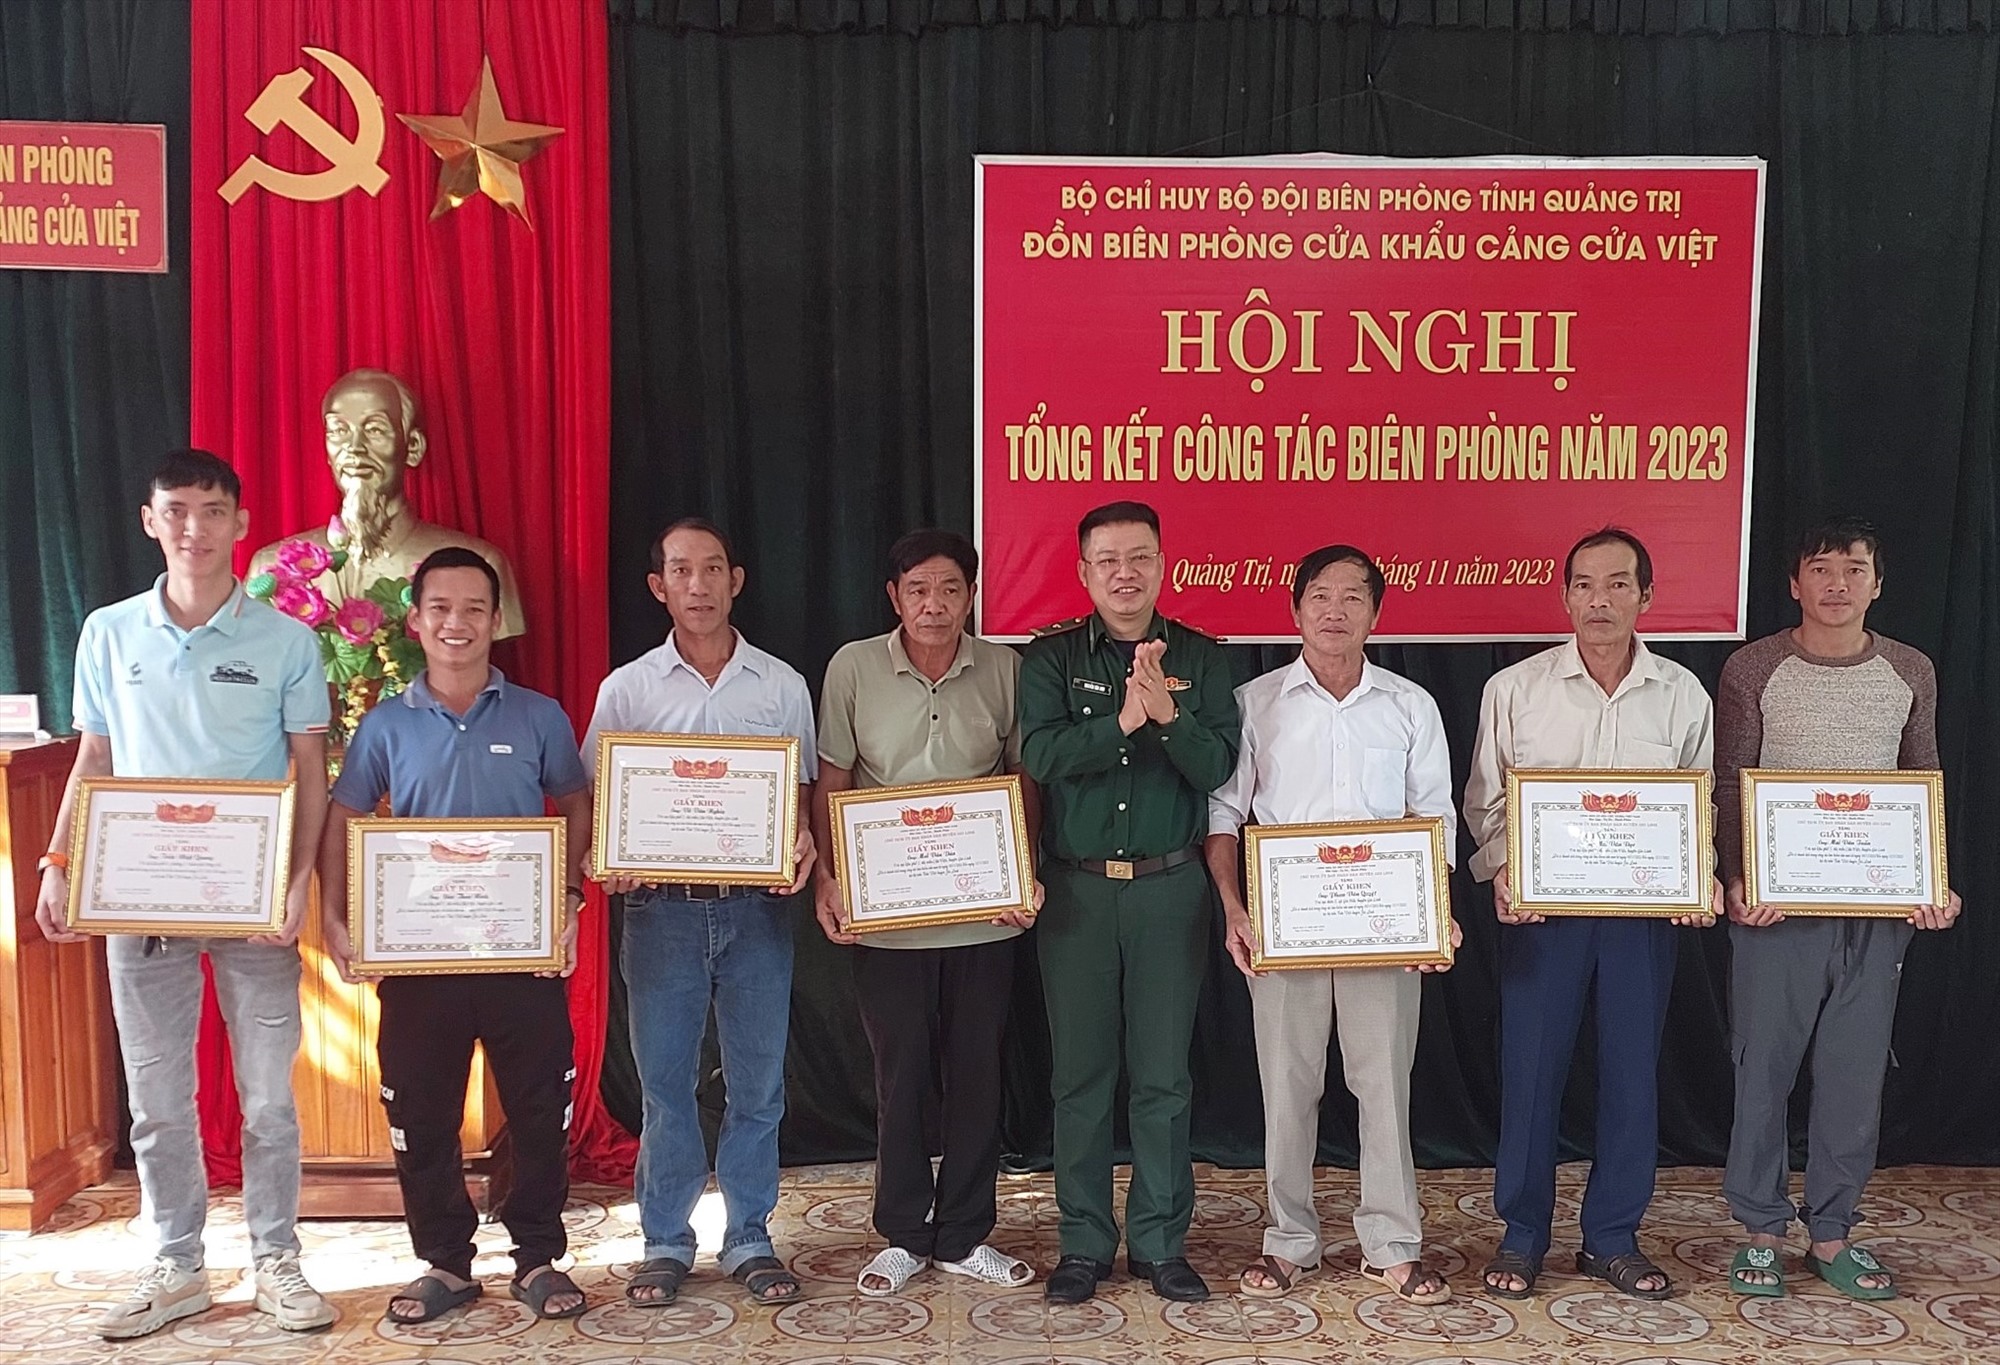 Ngư dân Mai Văn Dàn (thứ 3 từ phải sang) nhận giấy khen của Chủ tịch UBND huyện Gio Linh trao tặng - Ảnh: H.A